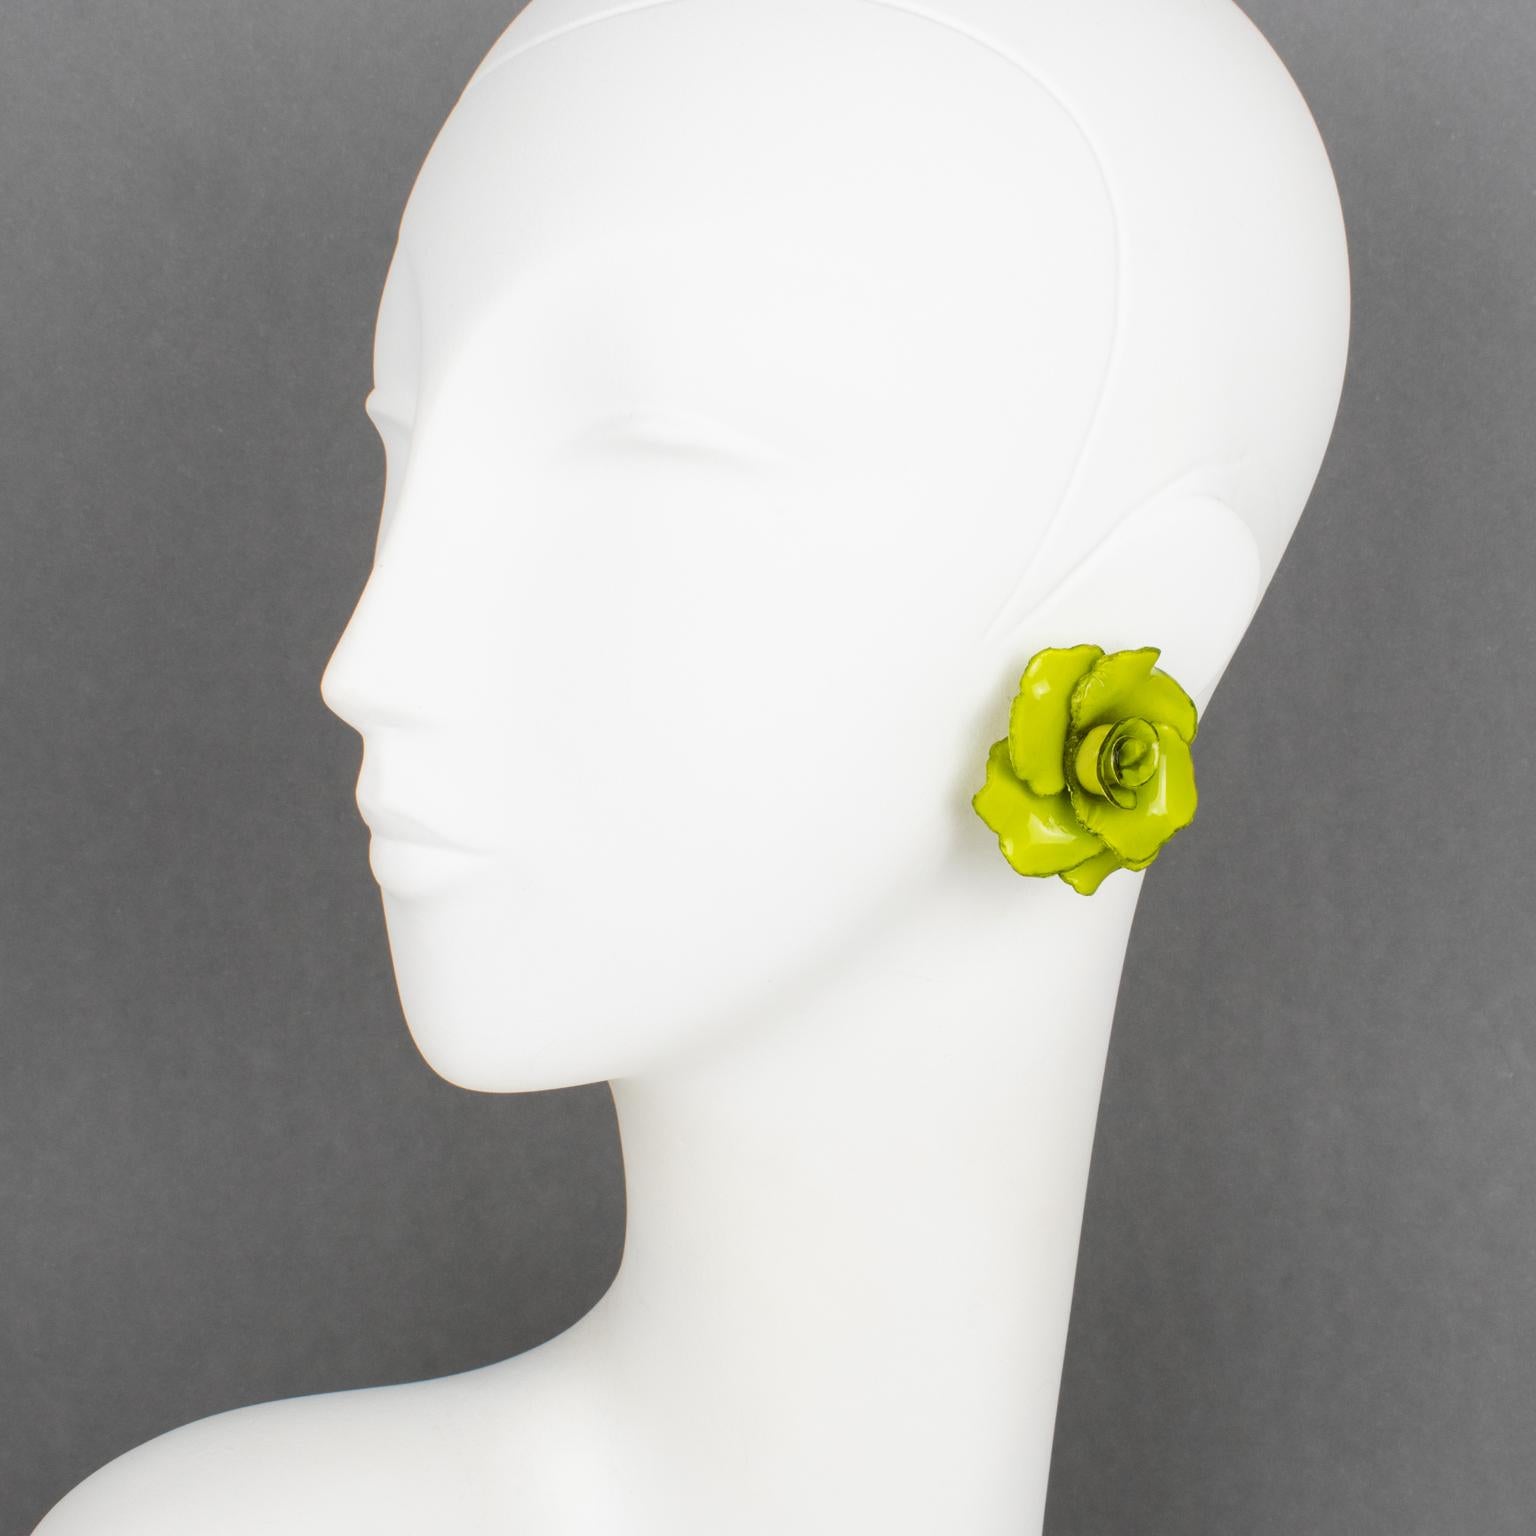 Cilea Paris hat für die französische Schmuckdesignerin Francoise Montague diese romantischen Ohrringe zum Anstecken entworfen. Die dreidimensionale Harzform zeigt Rosenblüten in eleganten avocadogrünen Farben. Es gibt keine sichtbare Signatur wie